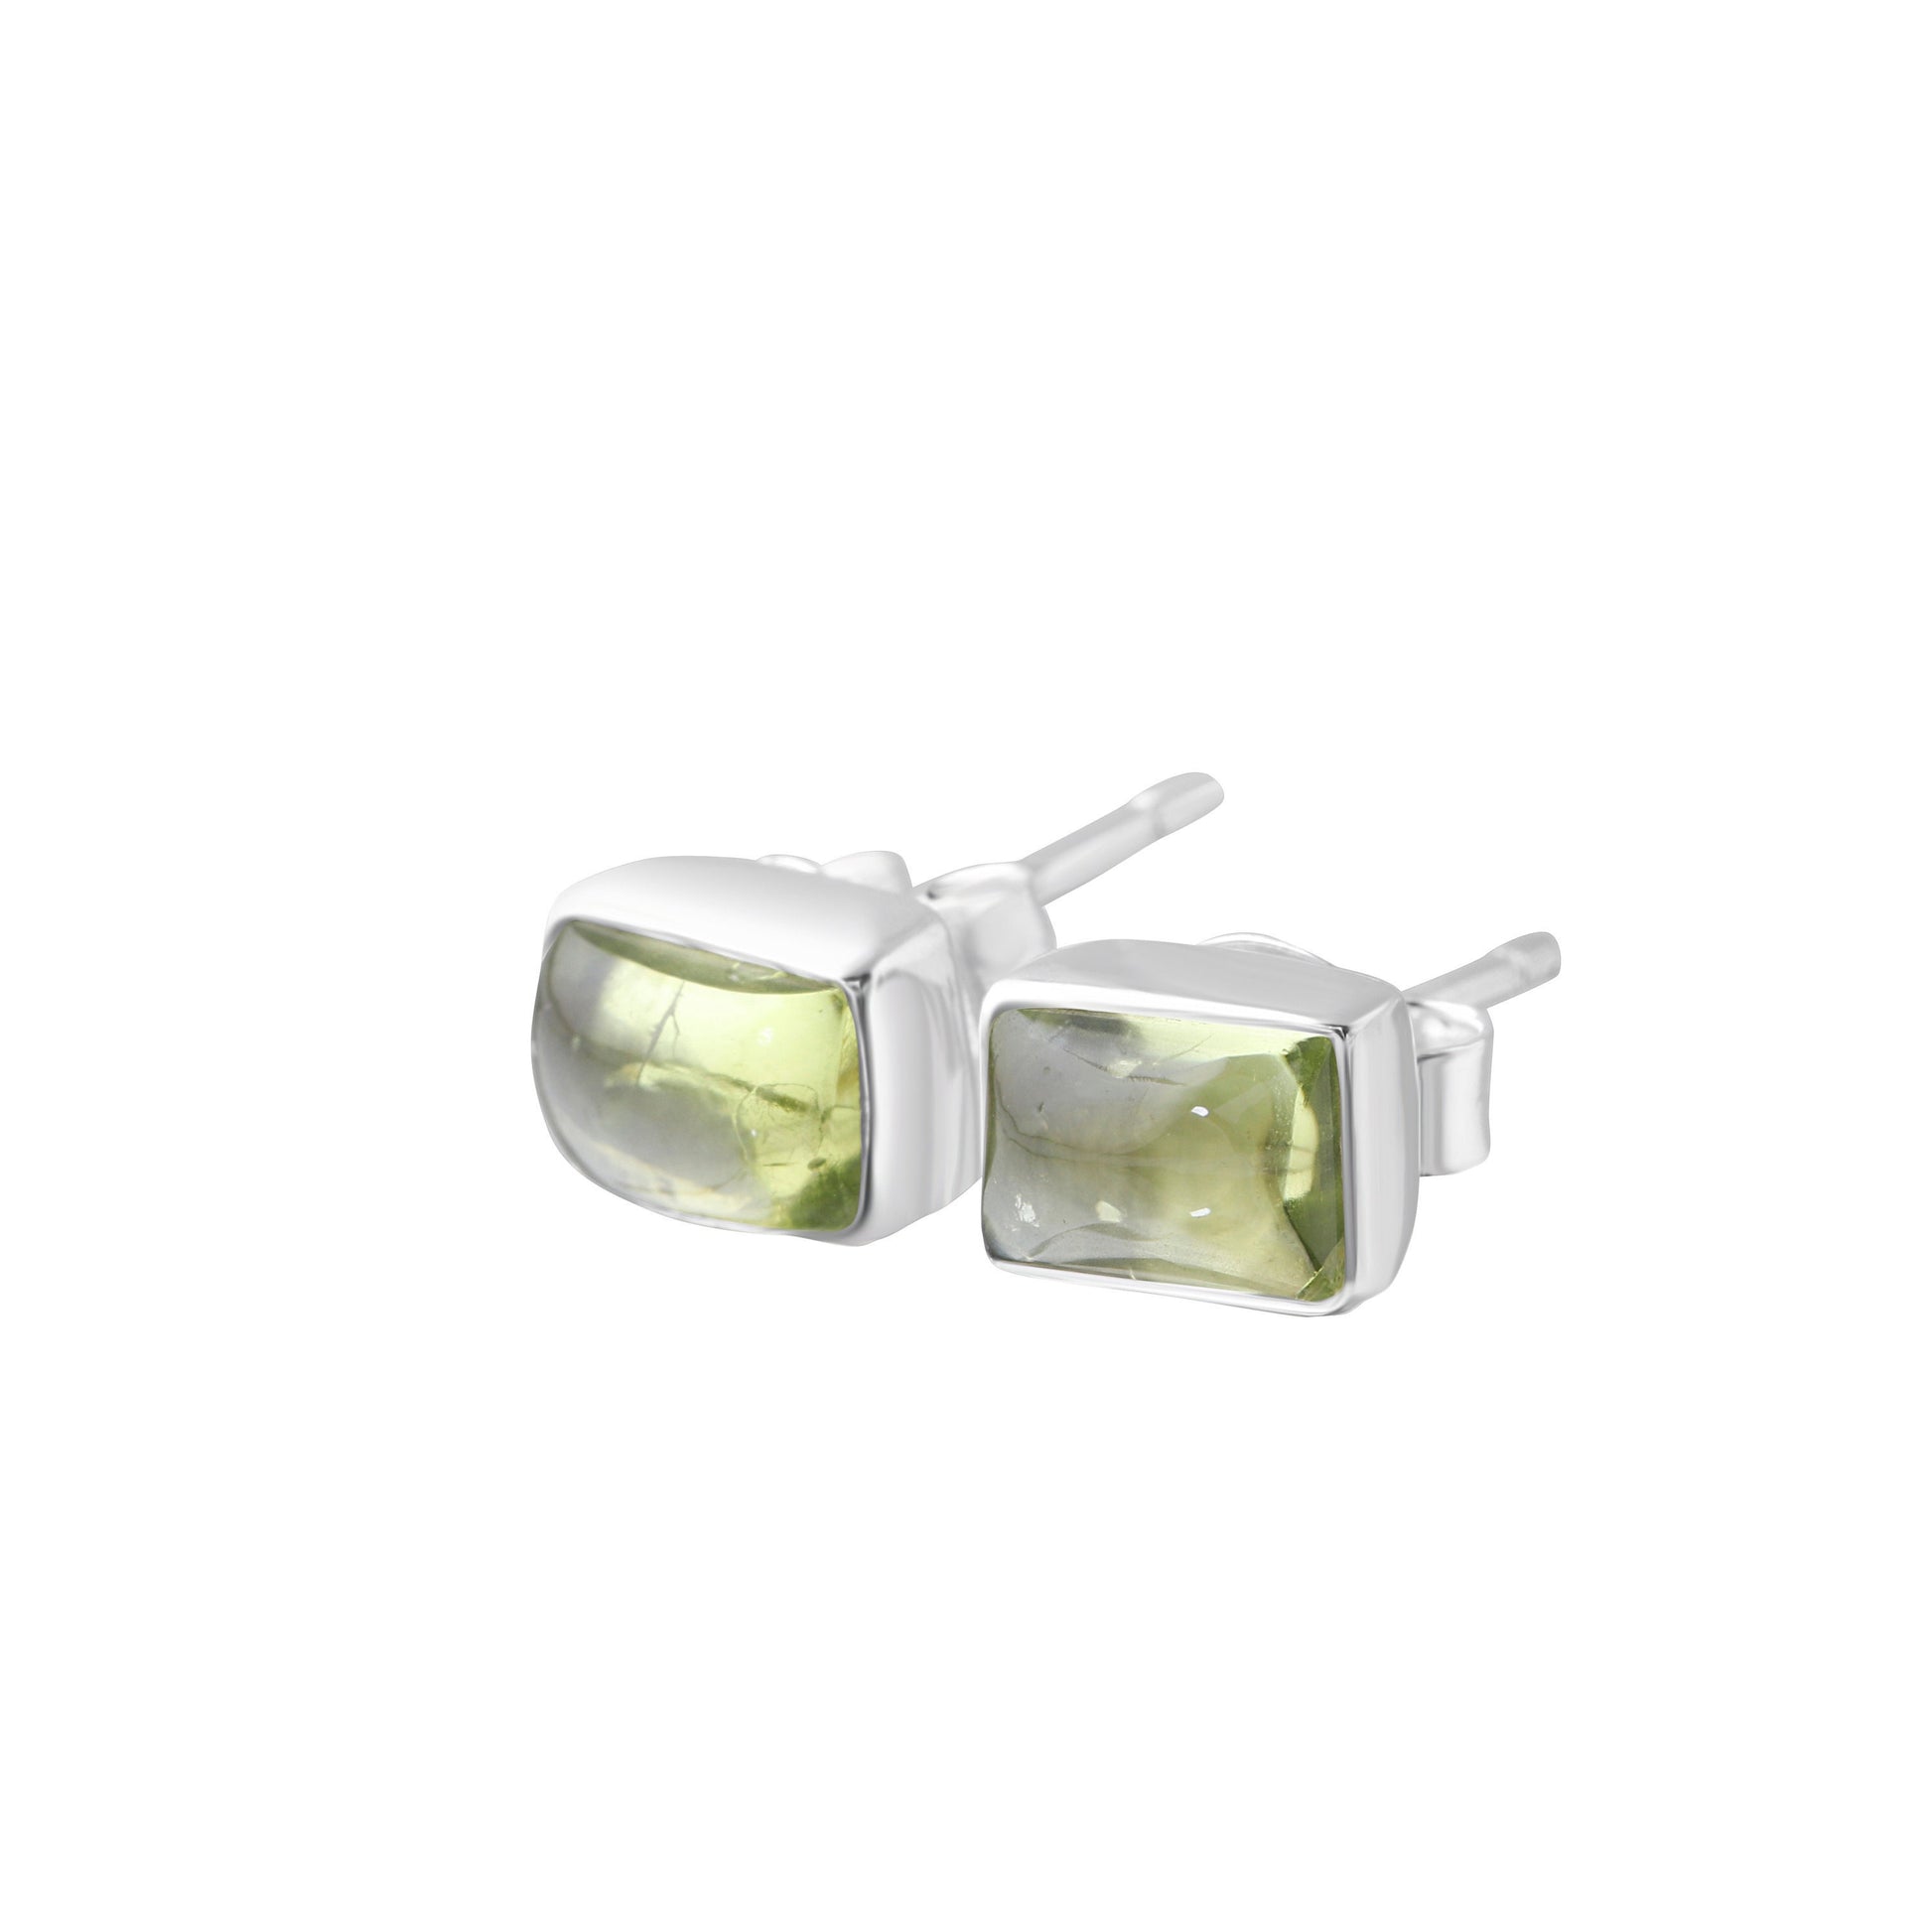 Genuine PERIDOT Gems Solid 925 Sterling SILVER Minimalist Rectangle Stud Earrings, Olive Green Beautifully Cut Peridot Earrings, Australia, Zorbajewellers